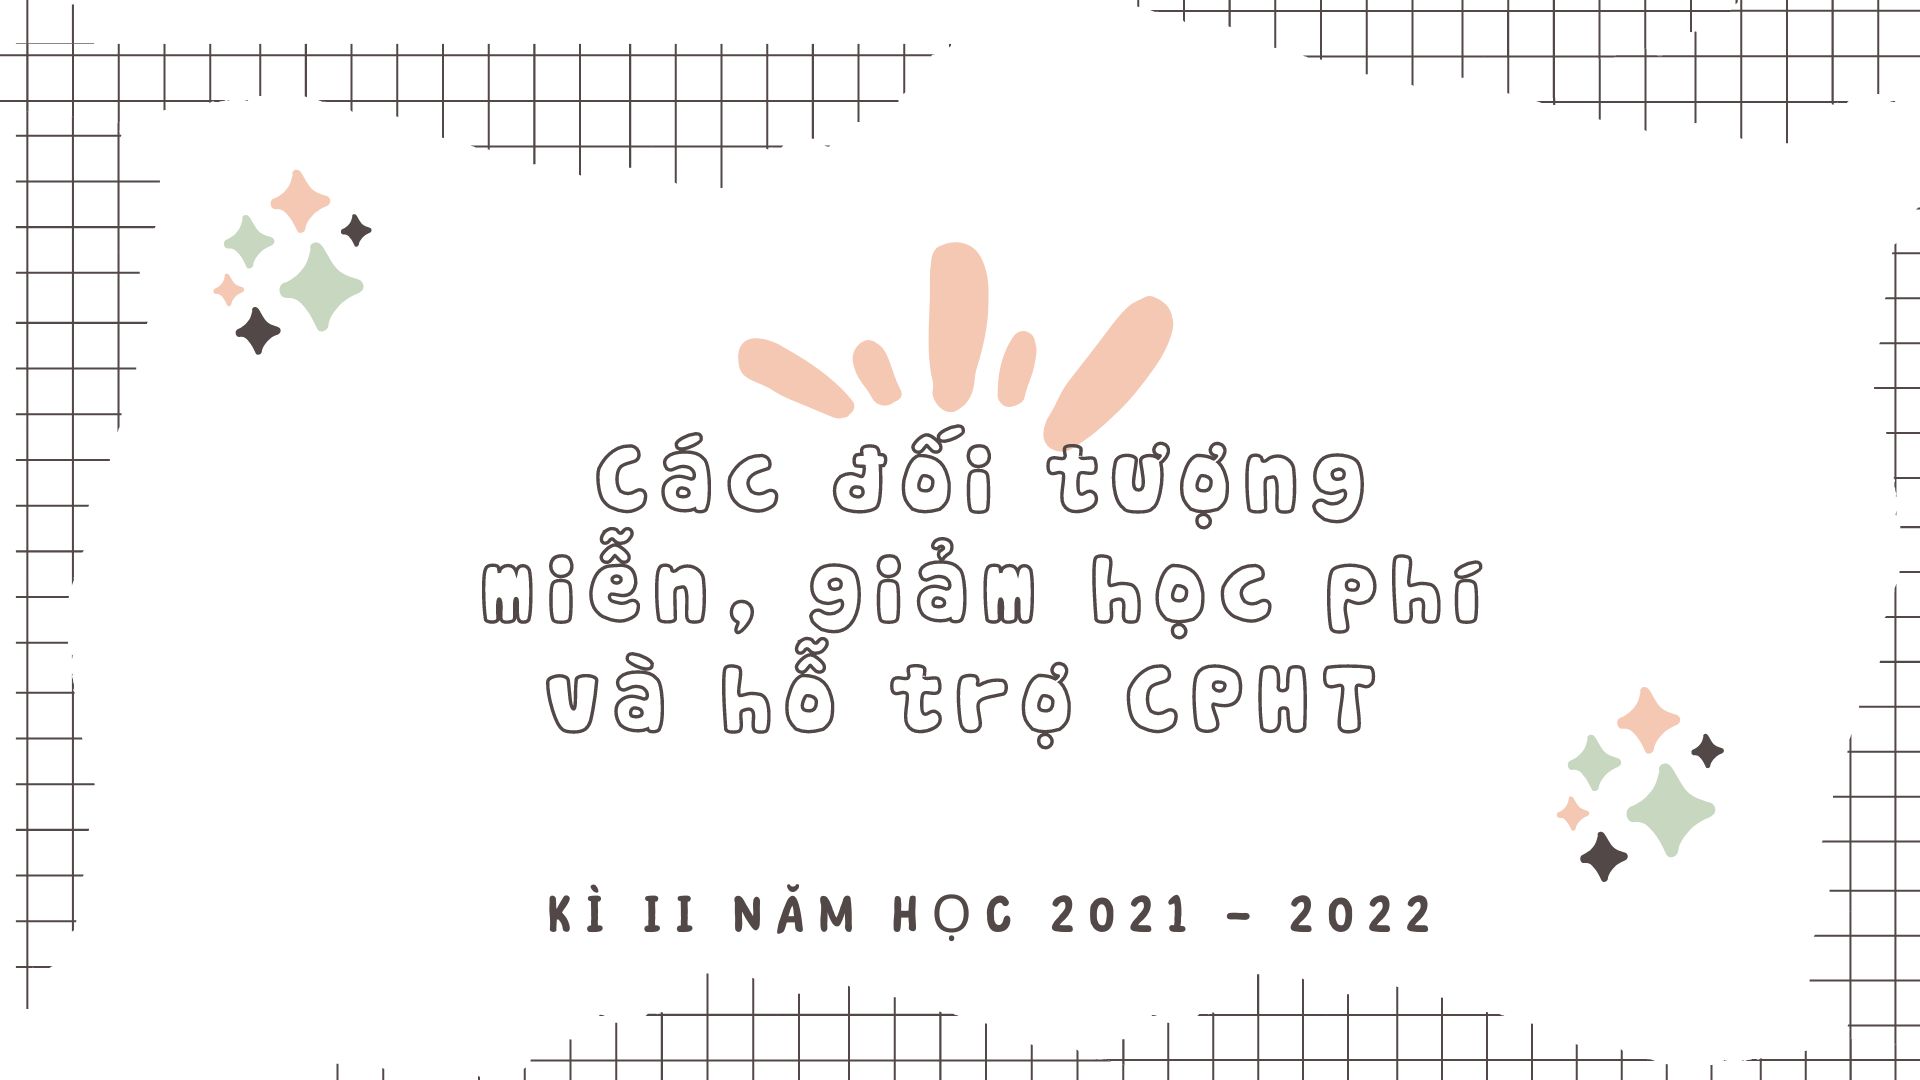 Tổng hợp các đối tượng miễn, giảm học phí và hỗ trợ CPHT  Kì II năm học 2021 – 2022